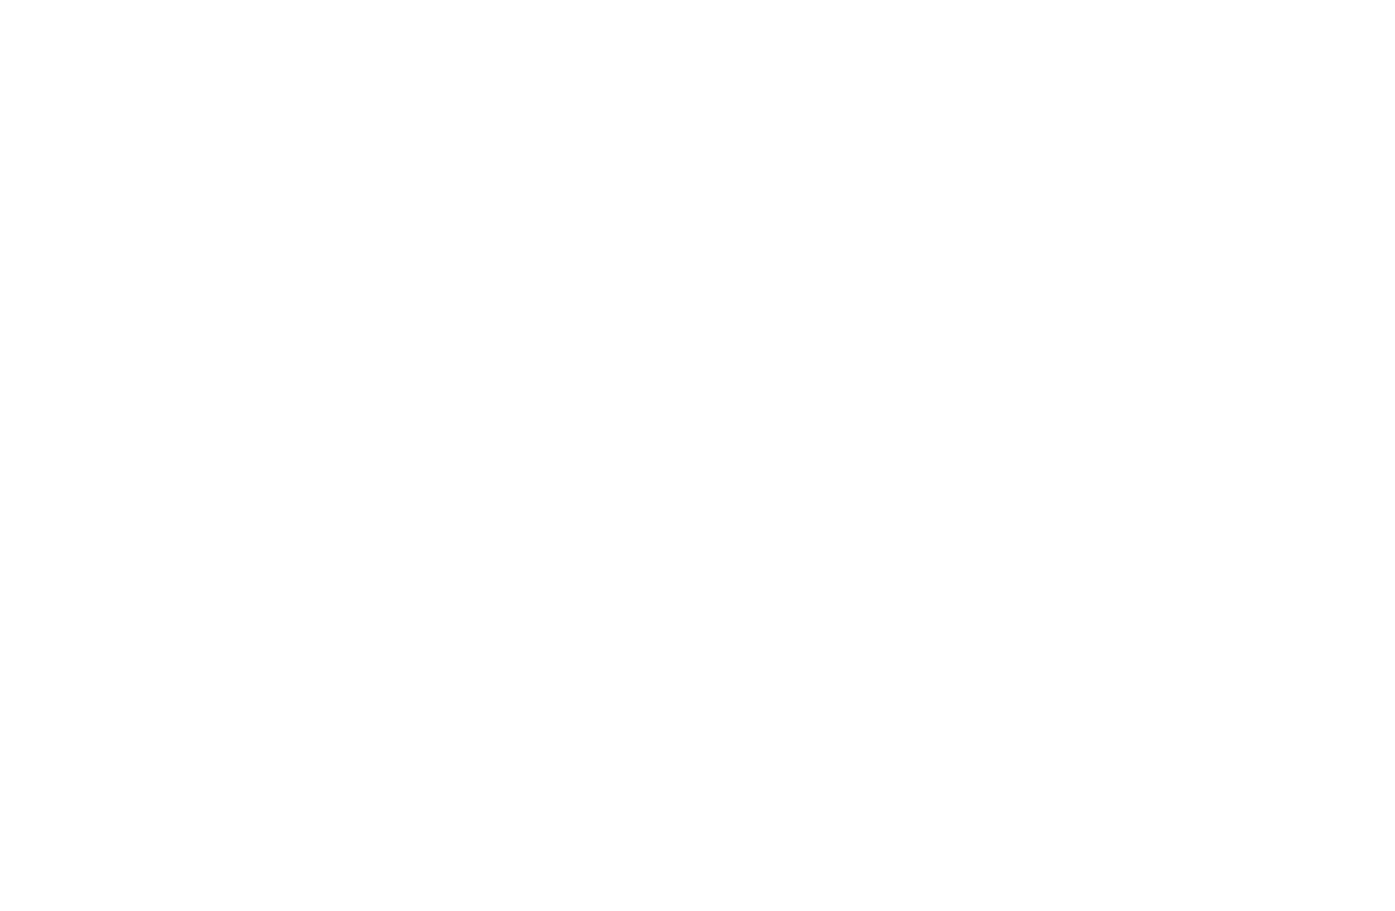 Atomic Black